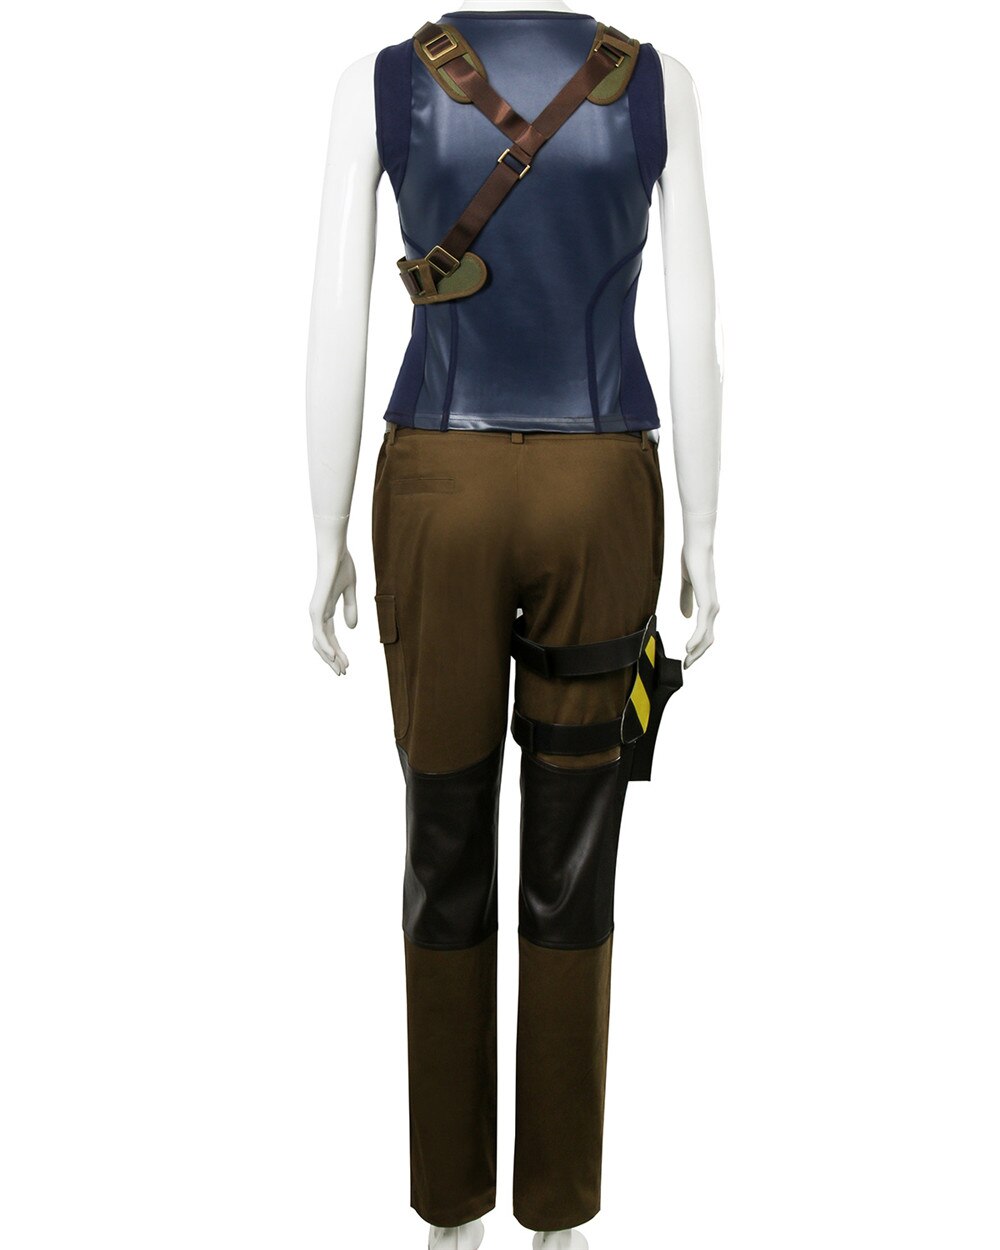 Costume-Cosplay-Lara-Croft-pour-femmes-bleu-fonc-et-vert-arm-e-Costume-de-film-ombre